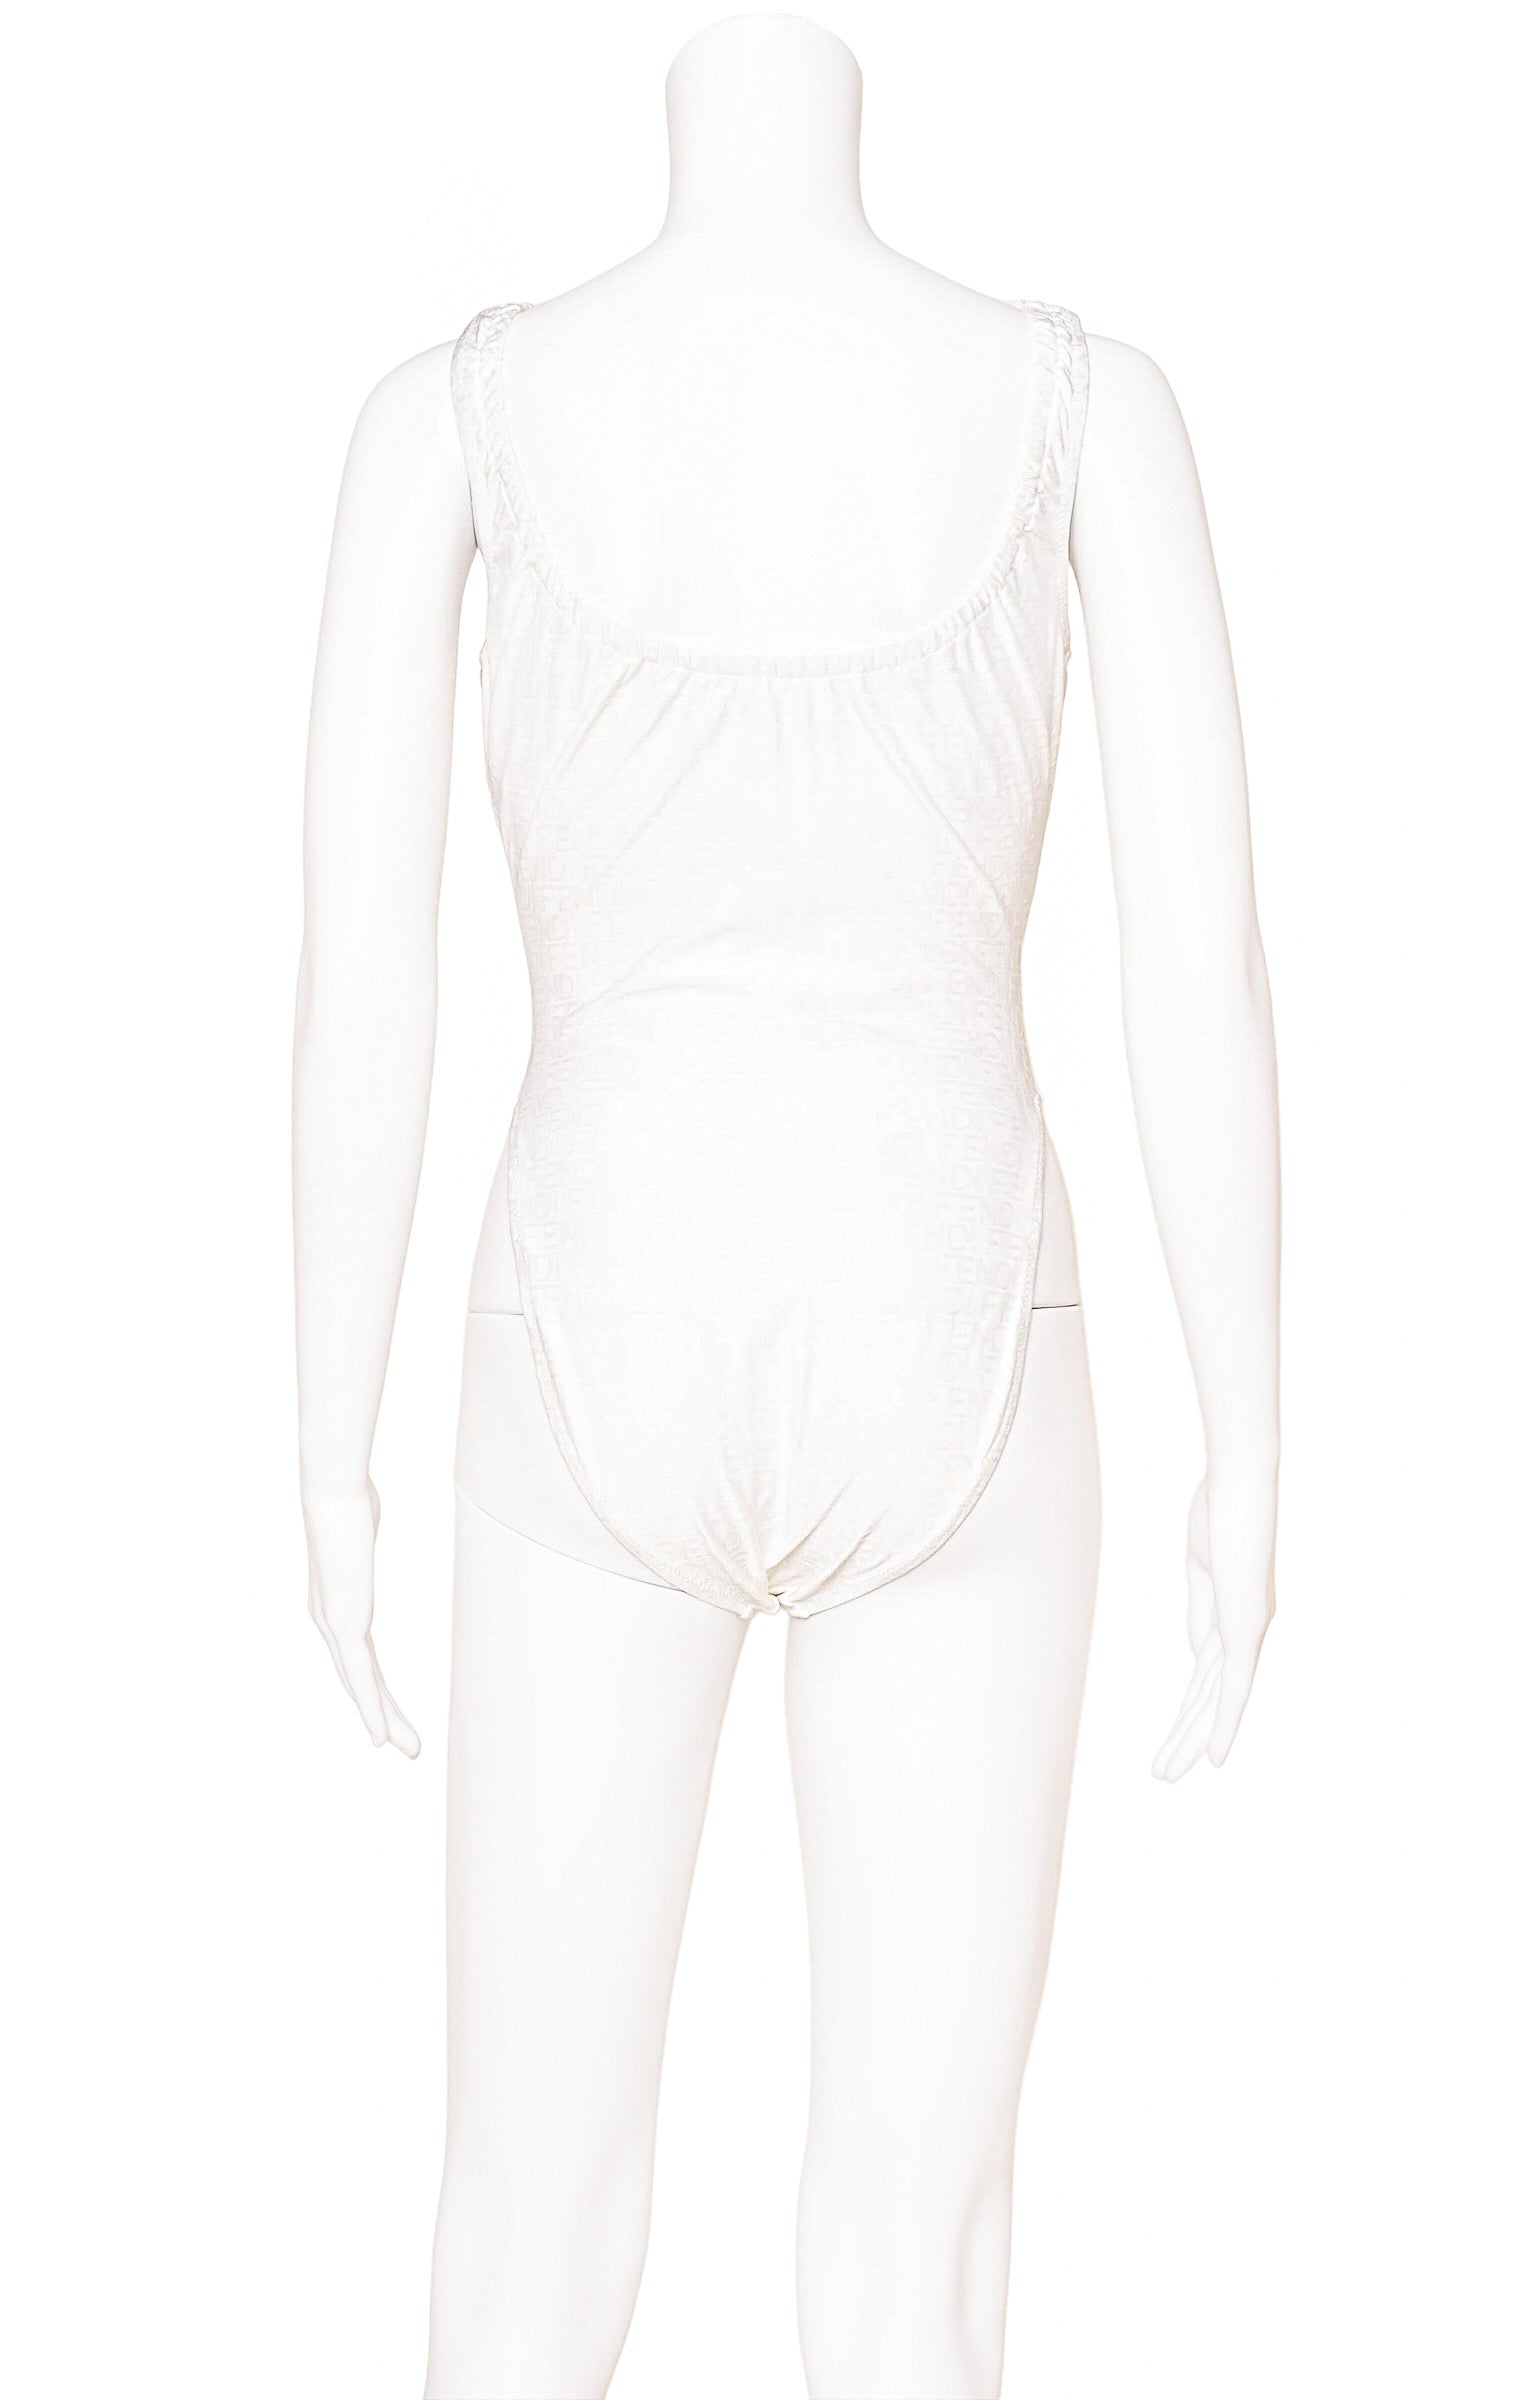 VINTAGE FENDI (RARE) Bodysuit / Swimsuit Size: IT 44 / Comparable to US 6